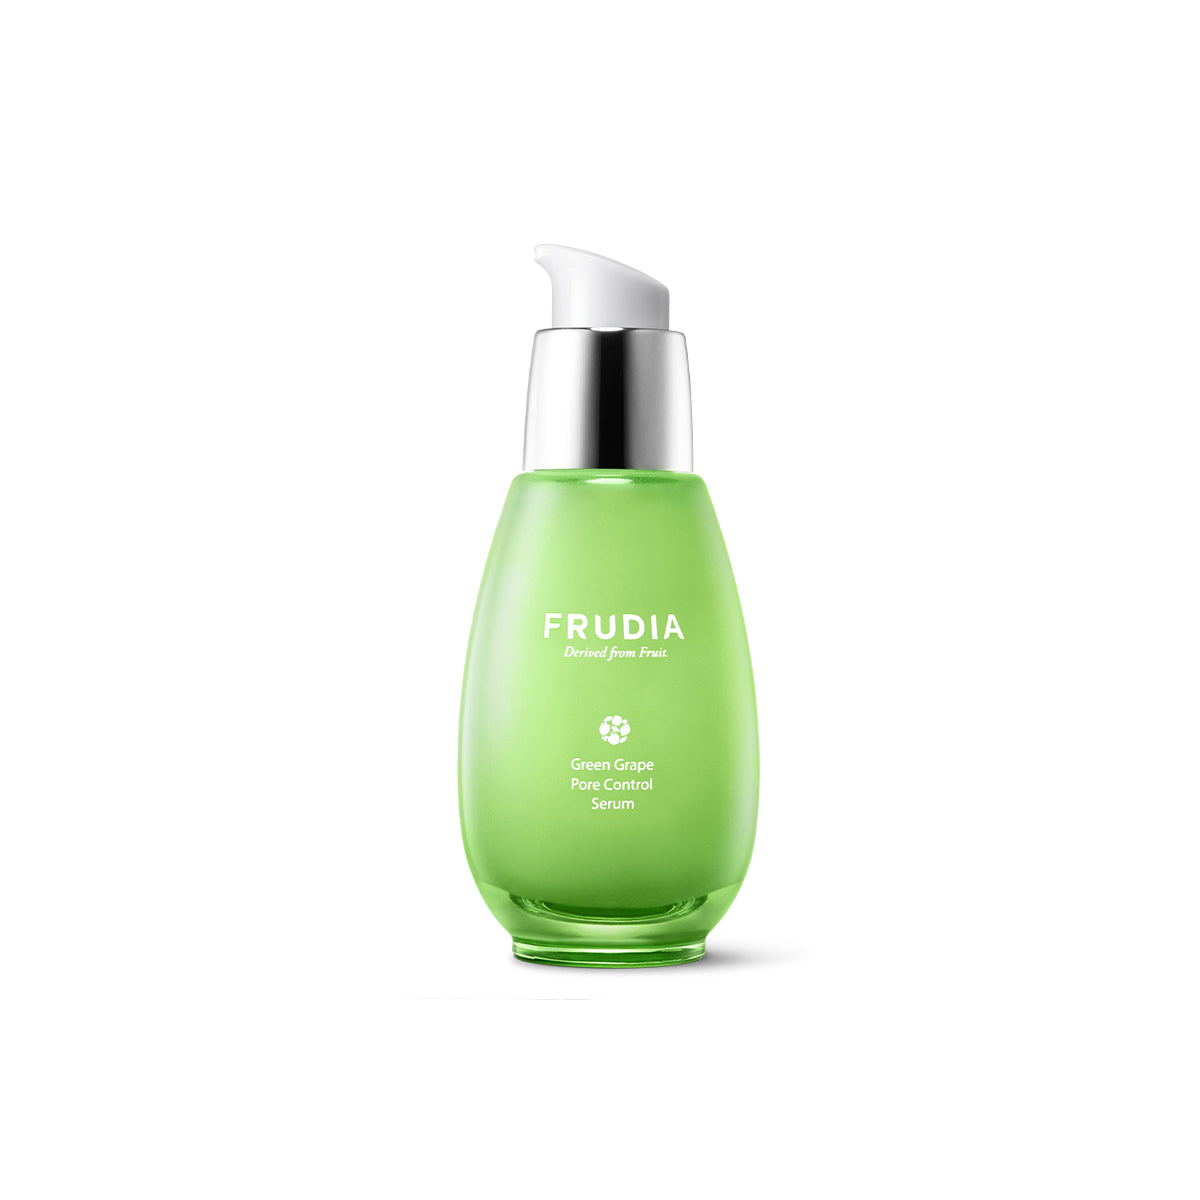 Frudia Green Grape Pore Control Serum 50g